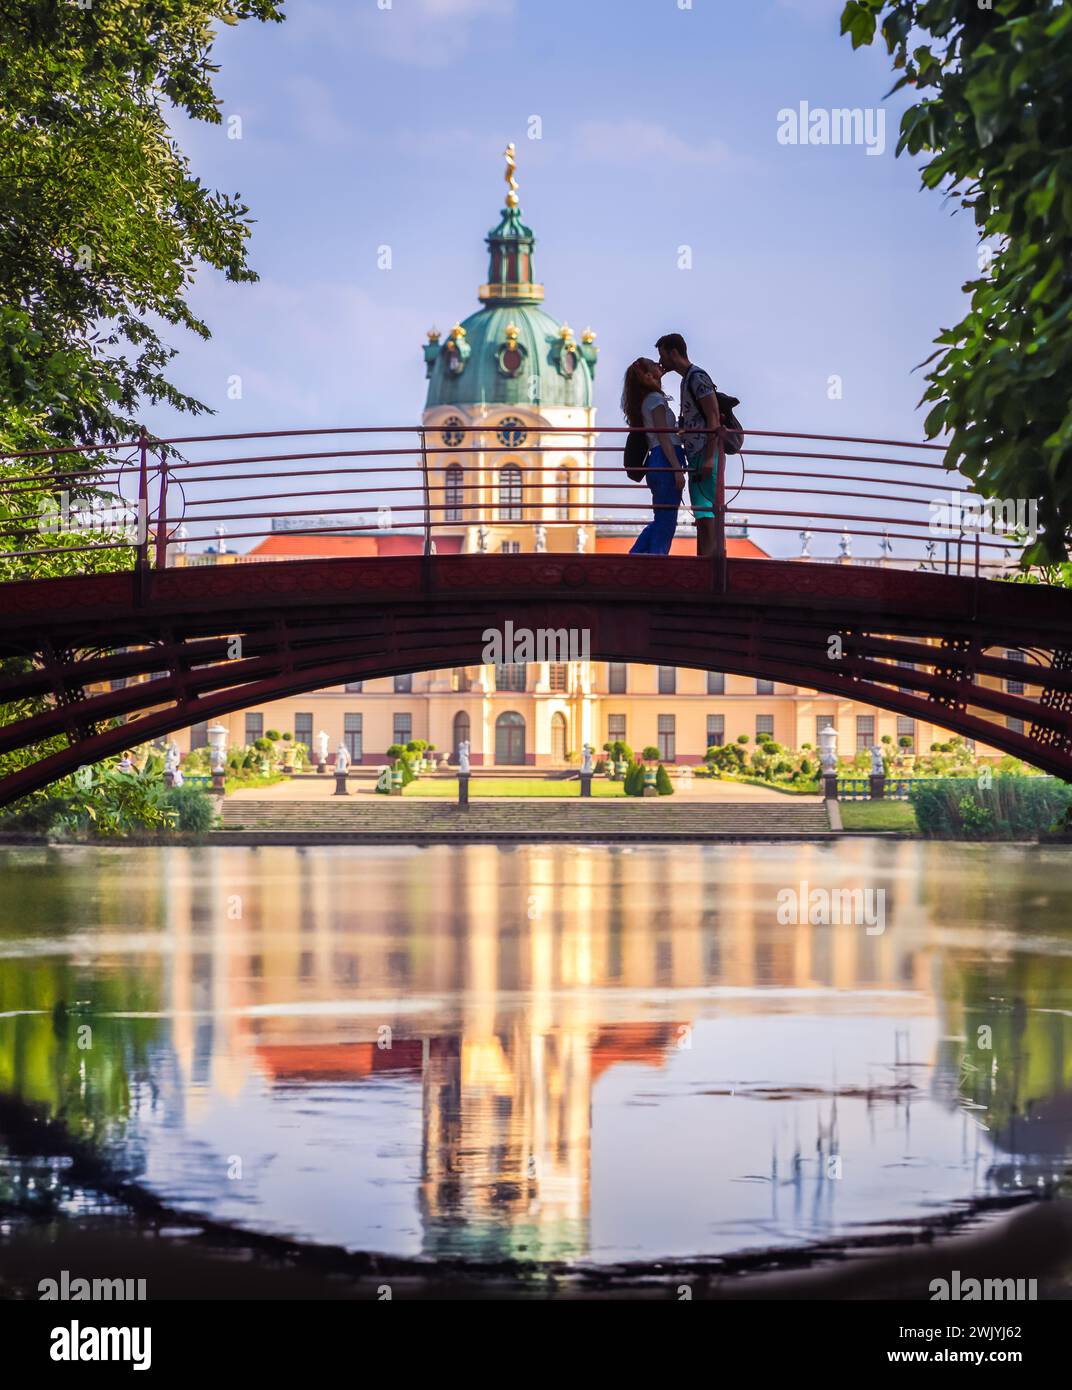 Berlino, Liebespaar auf einer Brücke im Schlosspark Charlottenburg Foto Stock